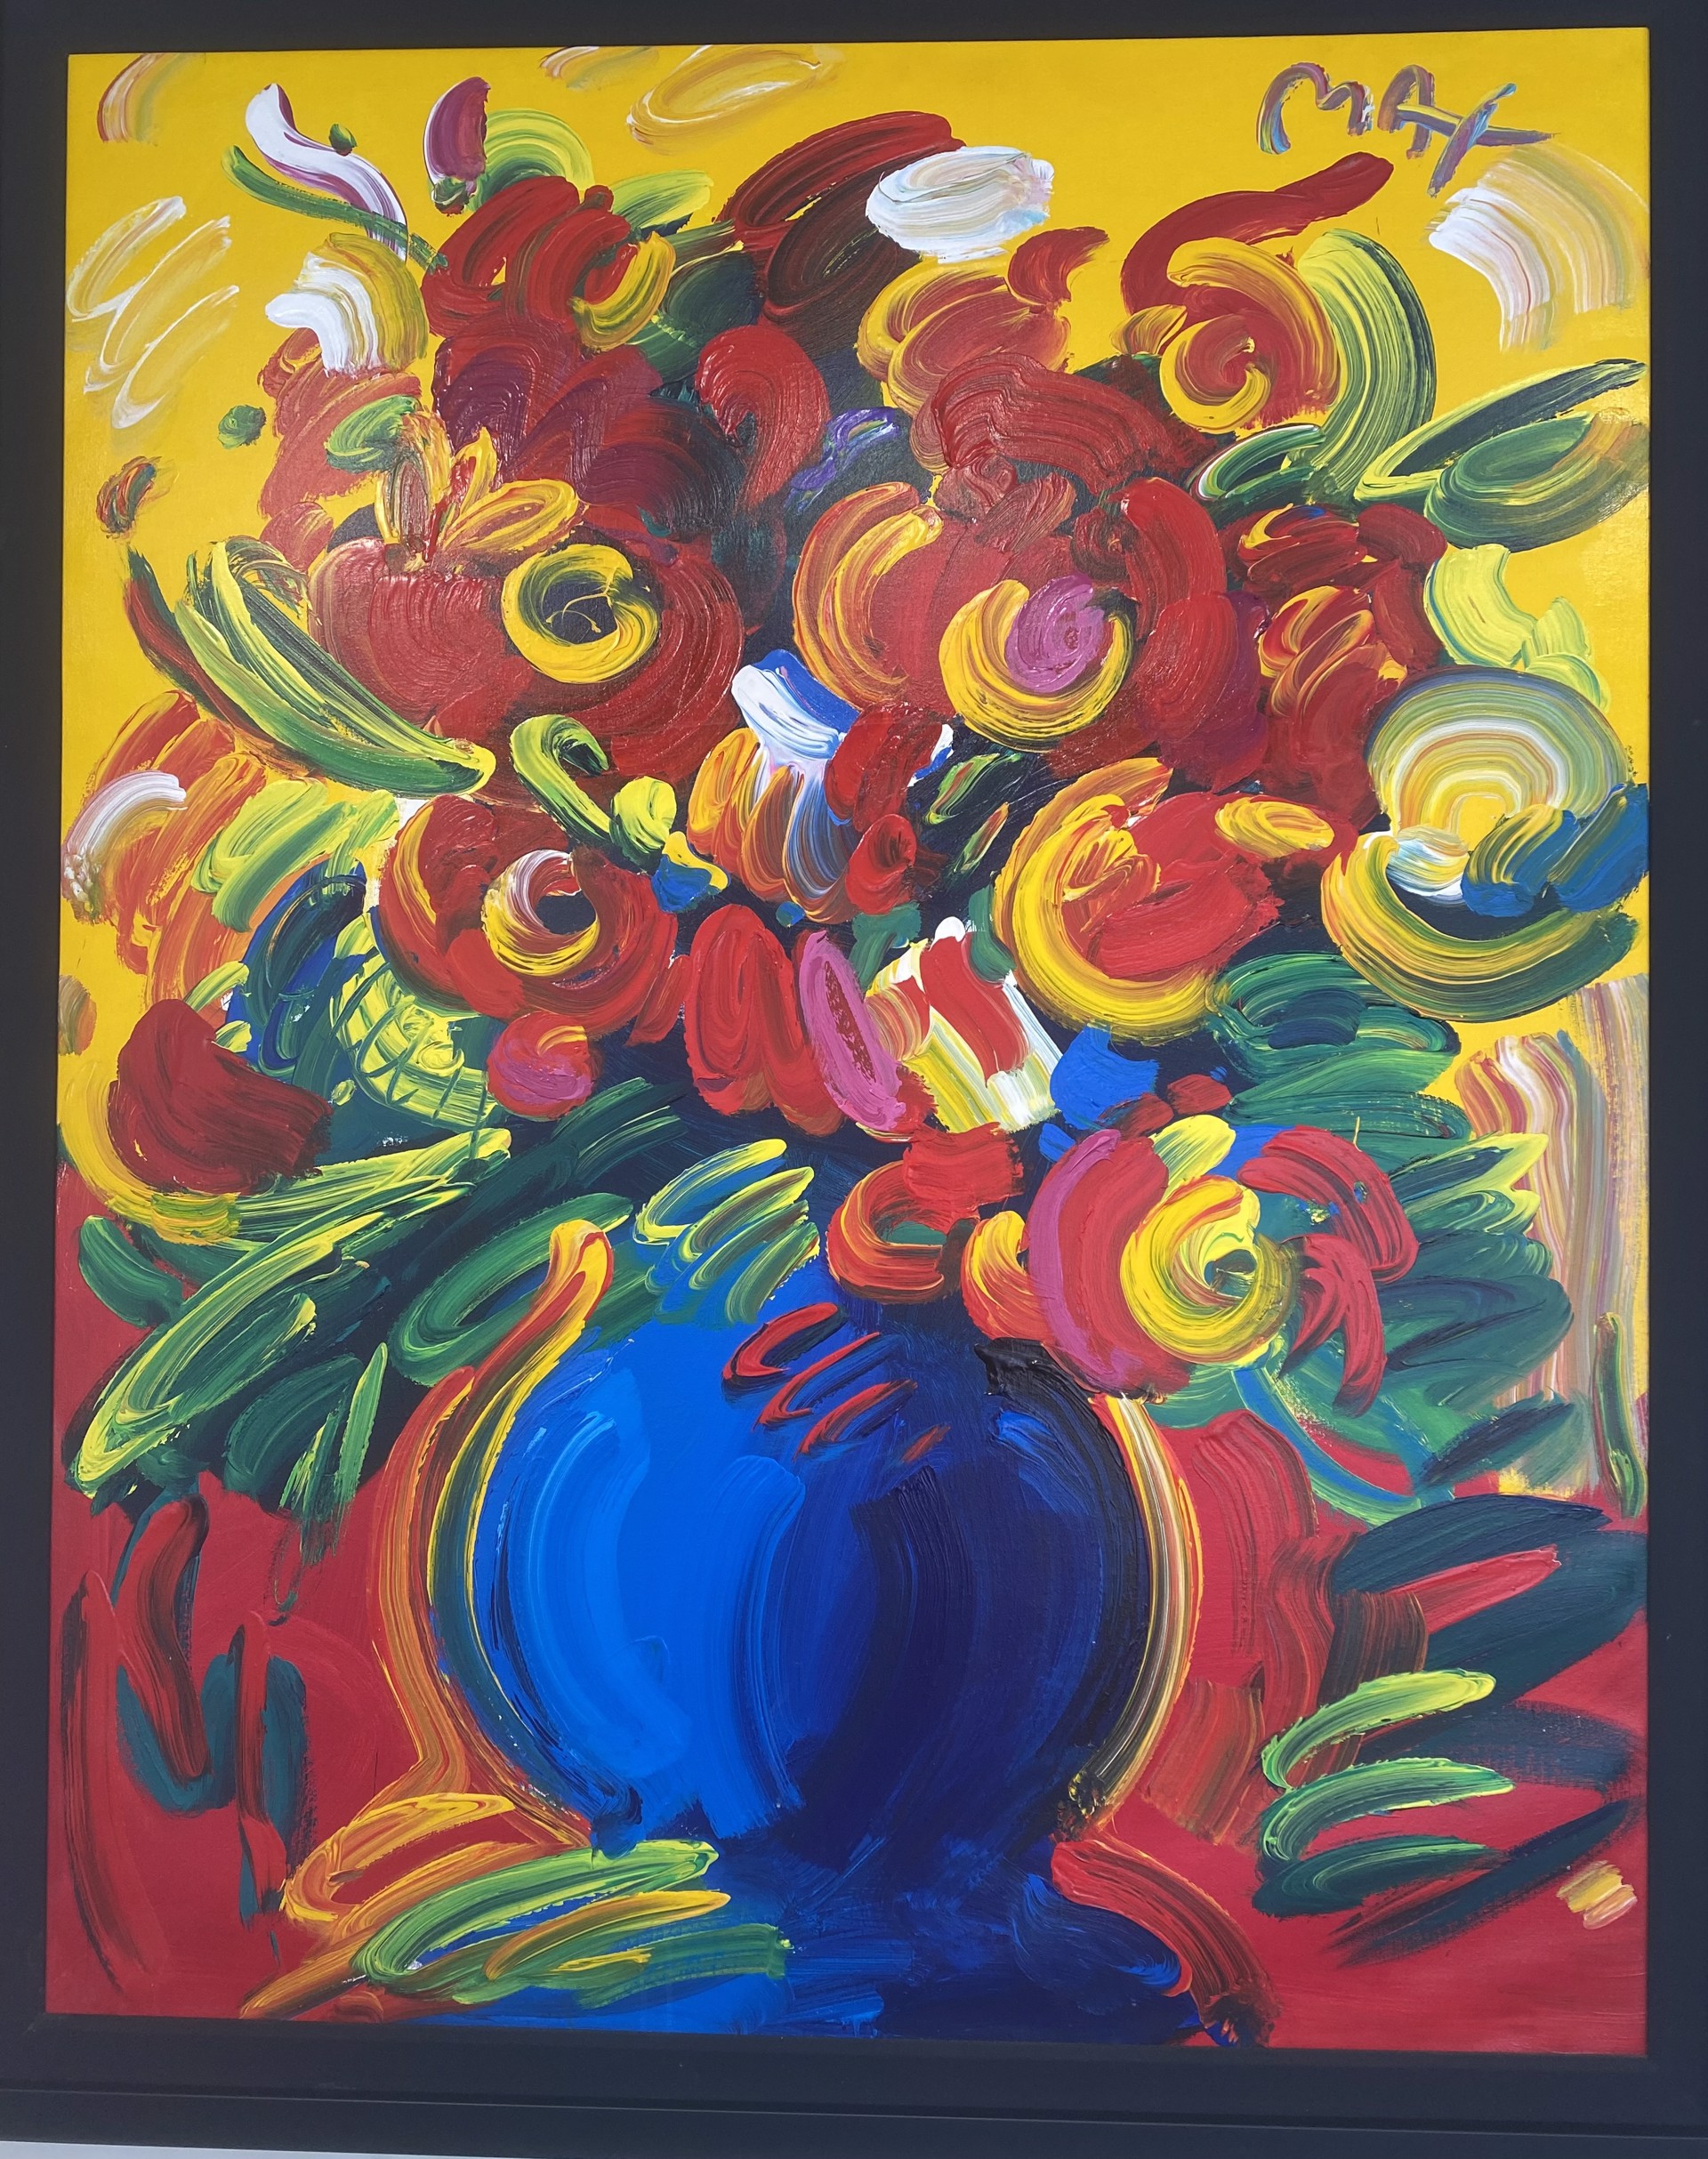 Vase of Flowers Series by Peter Max